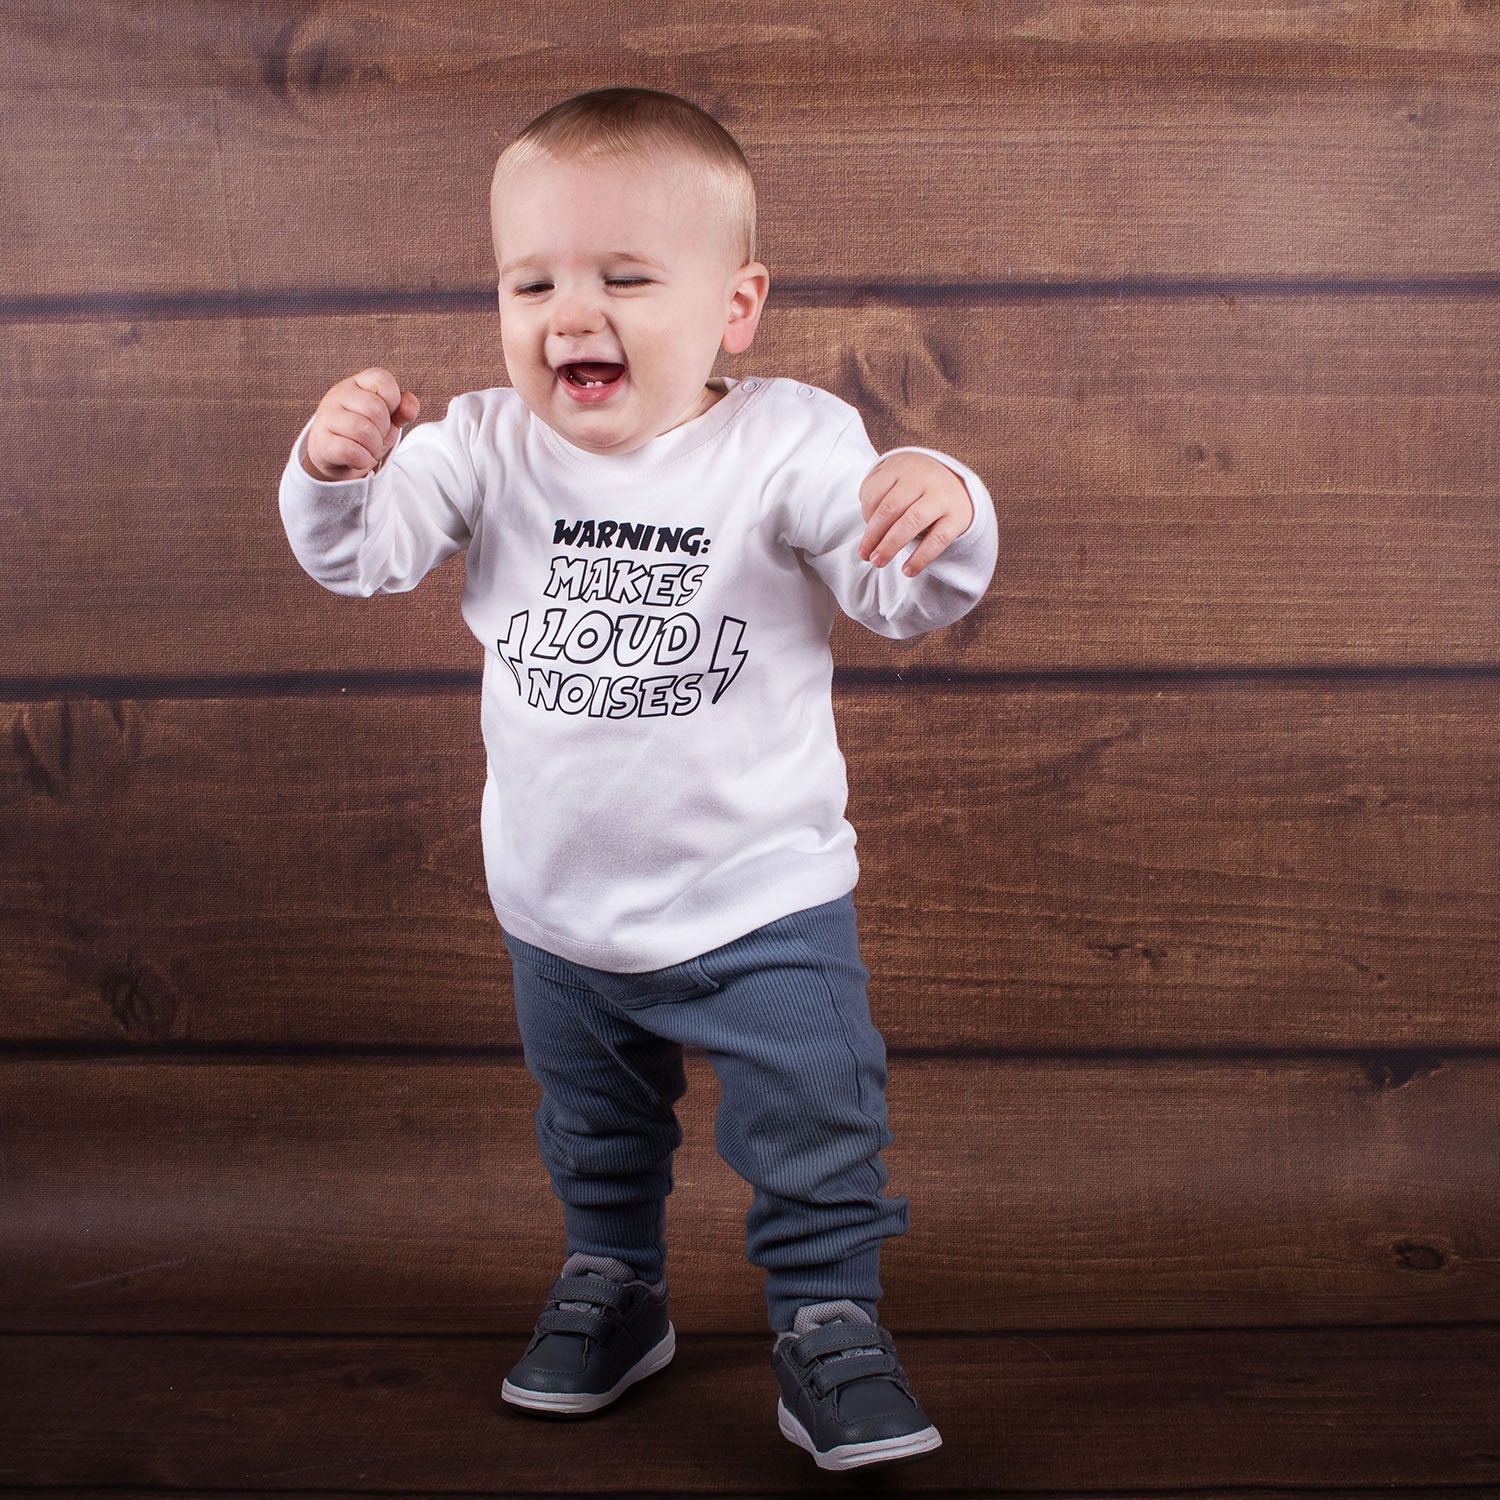 'Warning: makes loud noises' baby shirt met lange mouwen